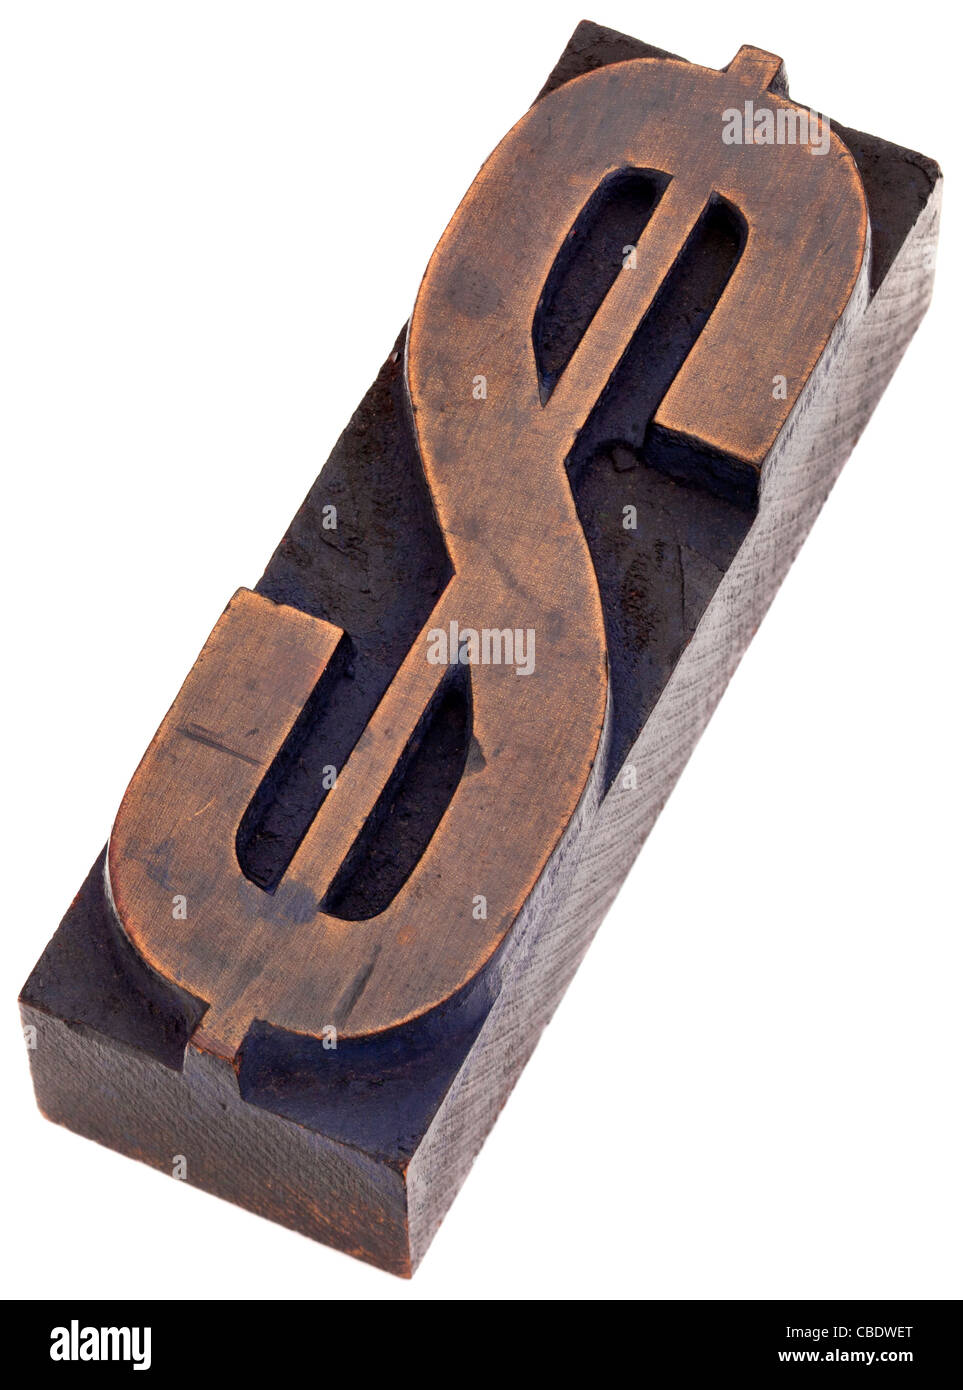 Le symbole du dollar dans la typographie vintage wood blocks, tachés par les encres de couleur, isolated on white Banque D'Images